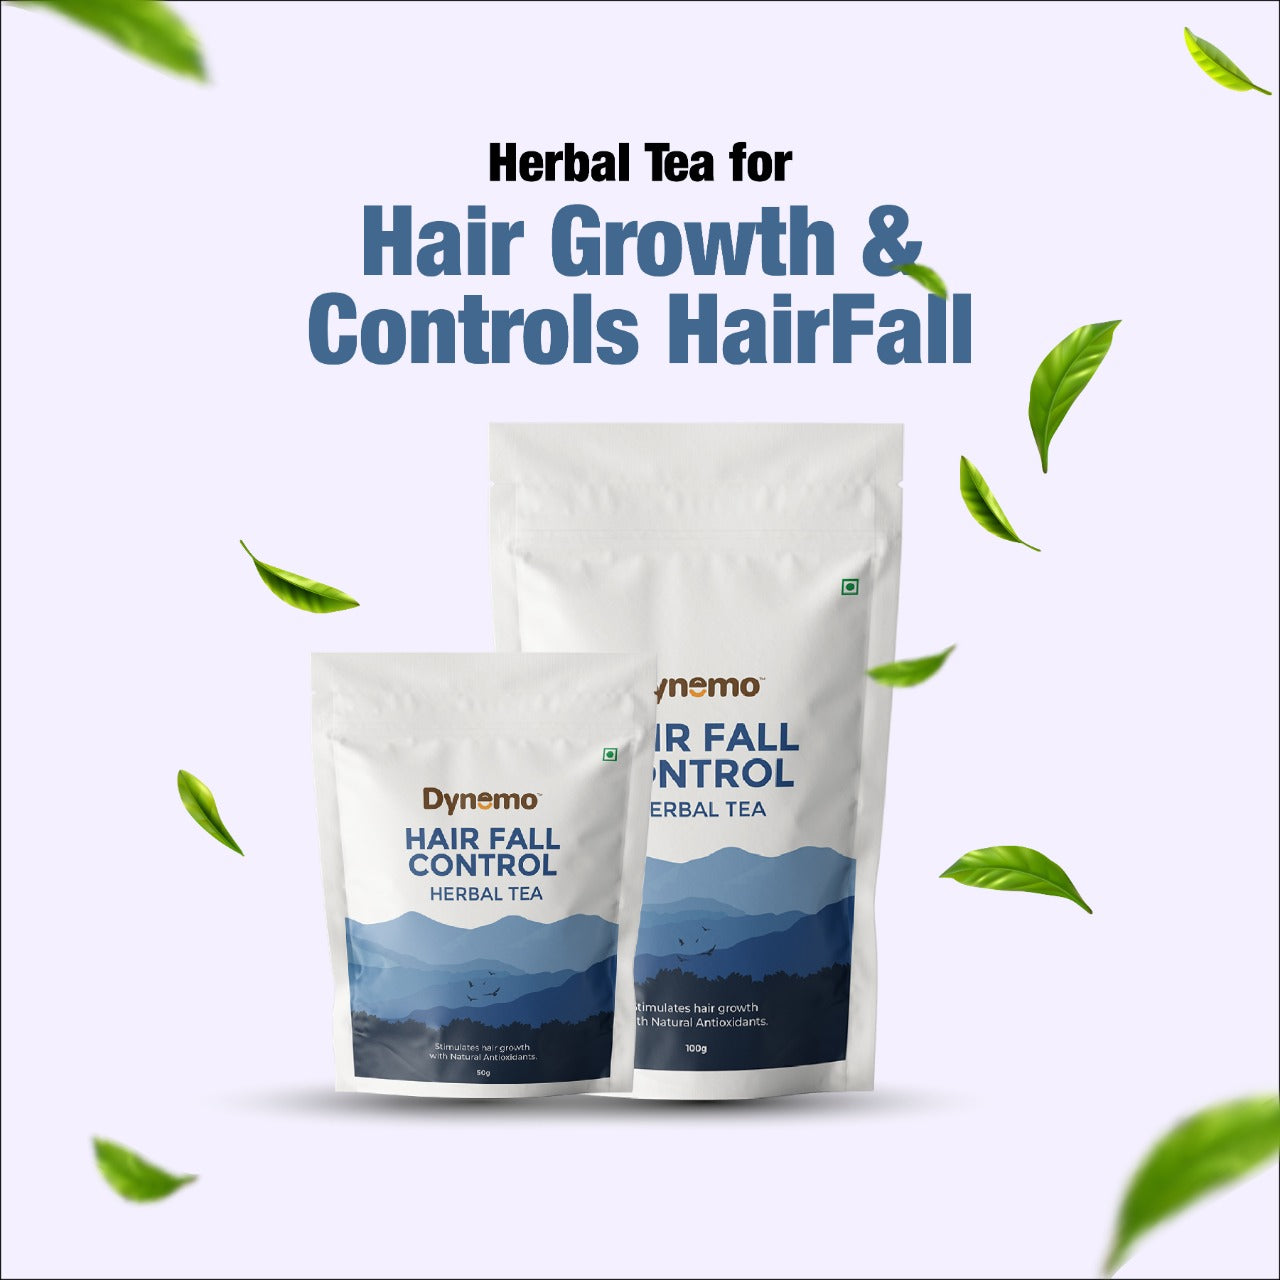 
                  
                    Hairfall Control Herbal Tree (100g)
                  
                